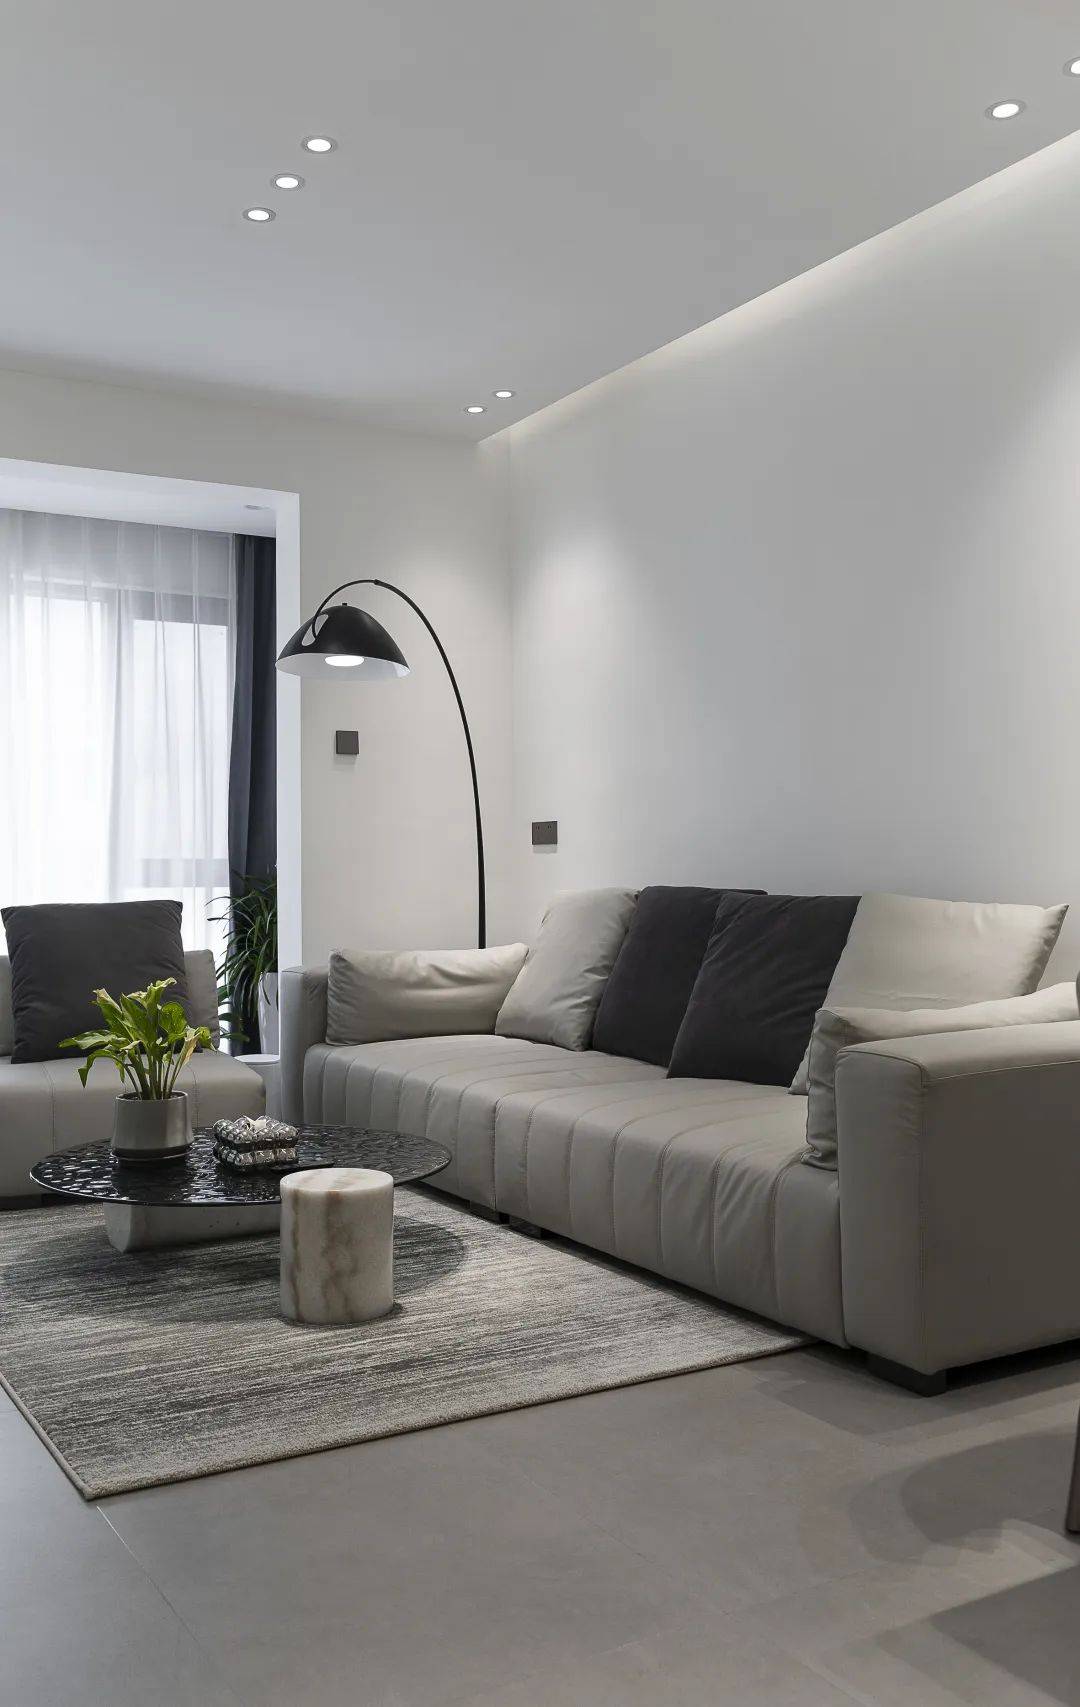 灰色皮质沙发 同款单椅 羊绒地毯,低饱和配色,简单干净